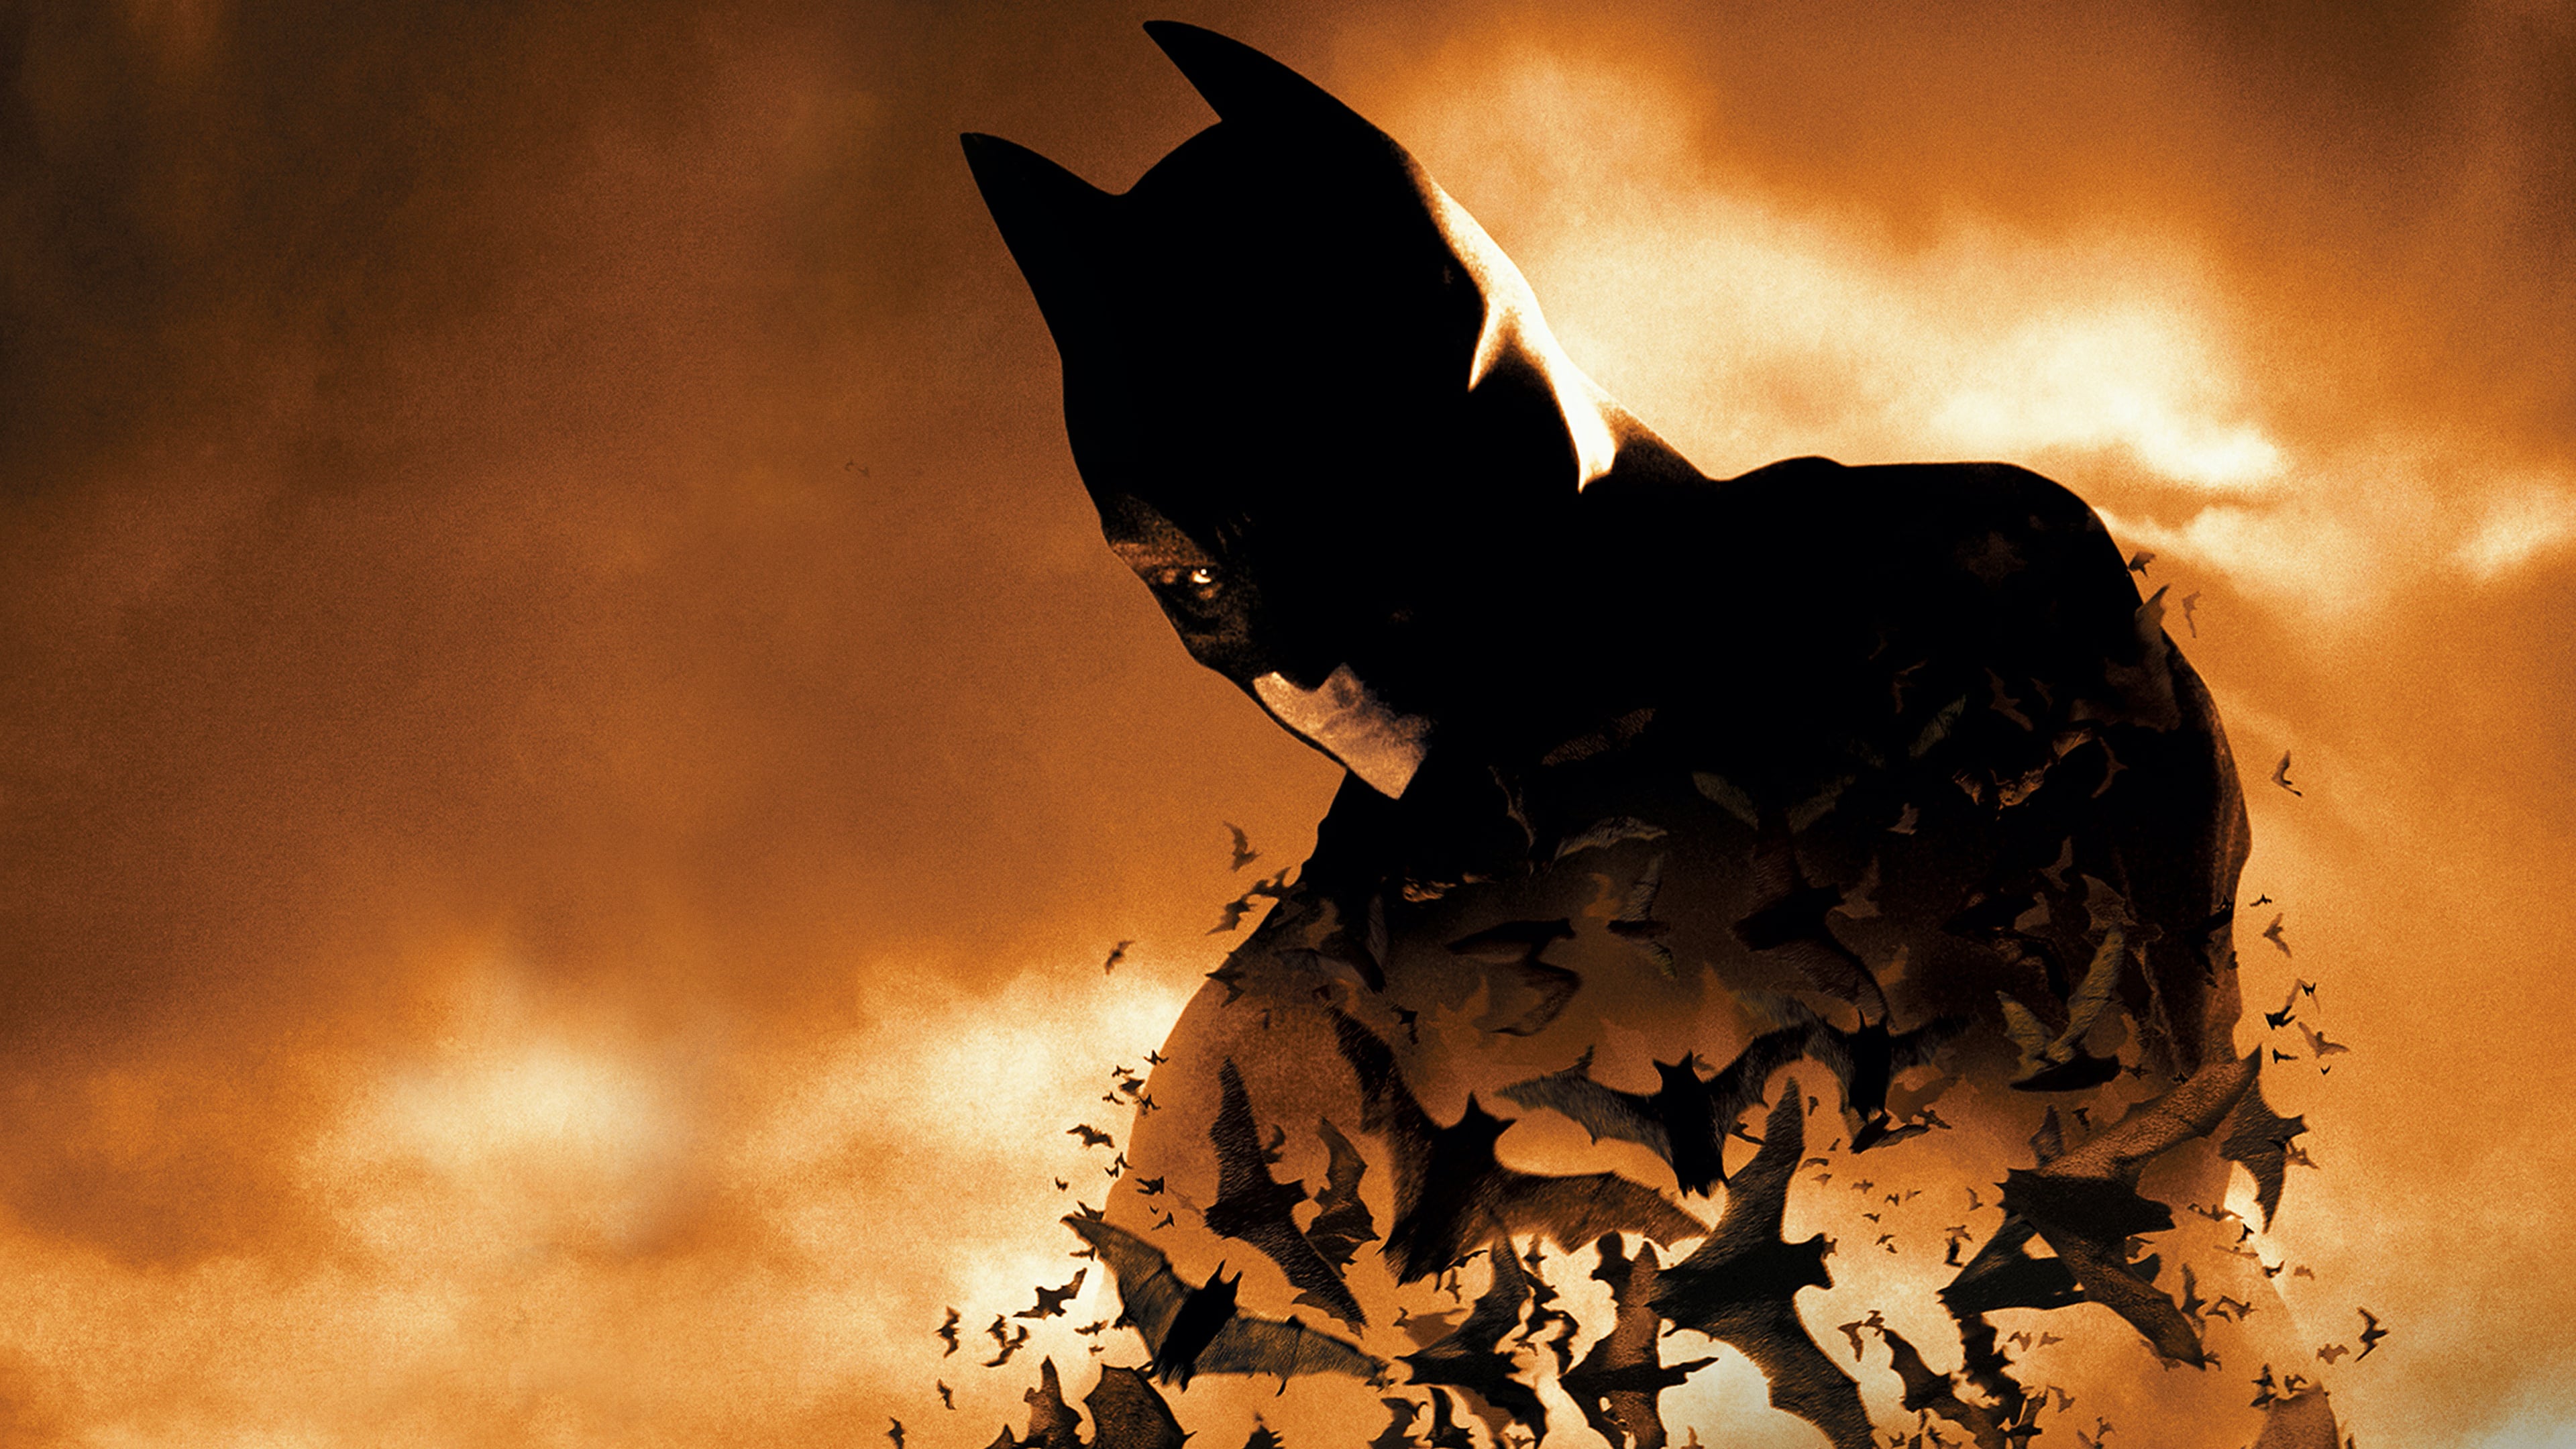 Batman Christian Bale - Batman Iphone Wallpaper 4k , HD Wallpaper & Backgrounds